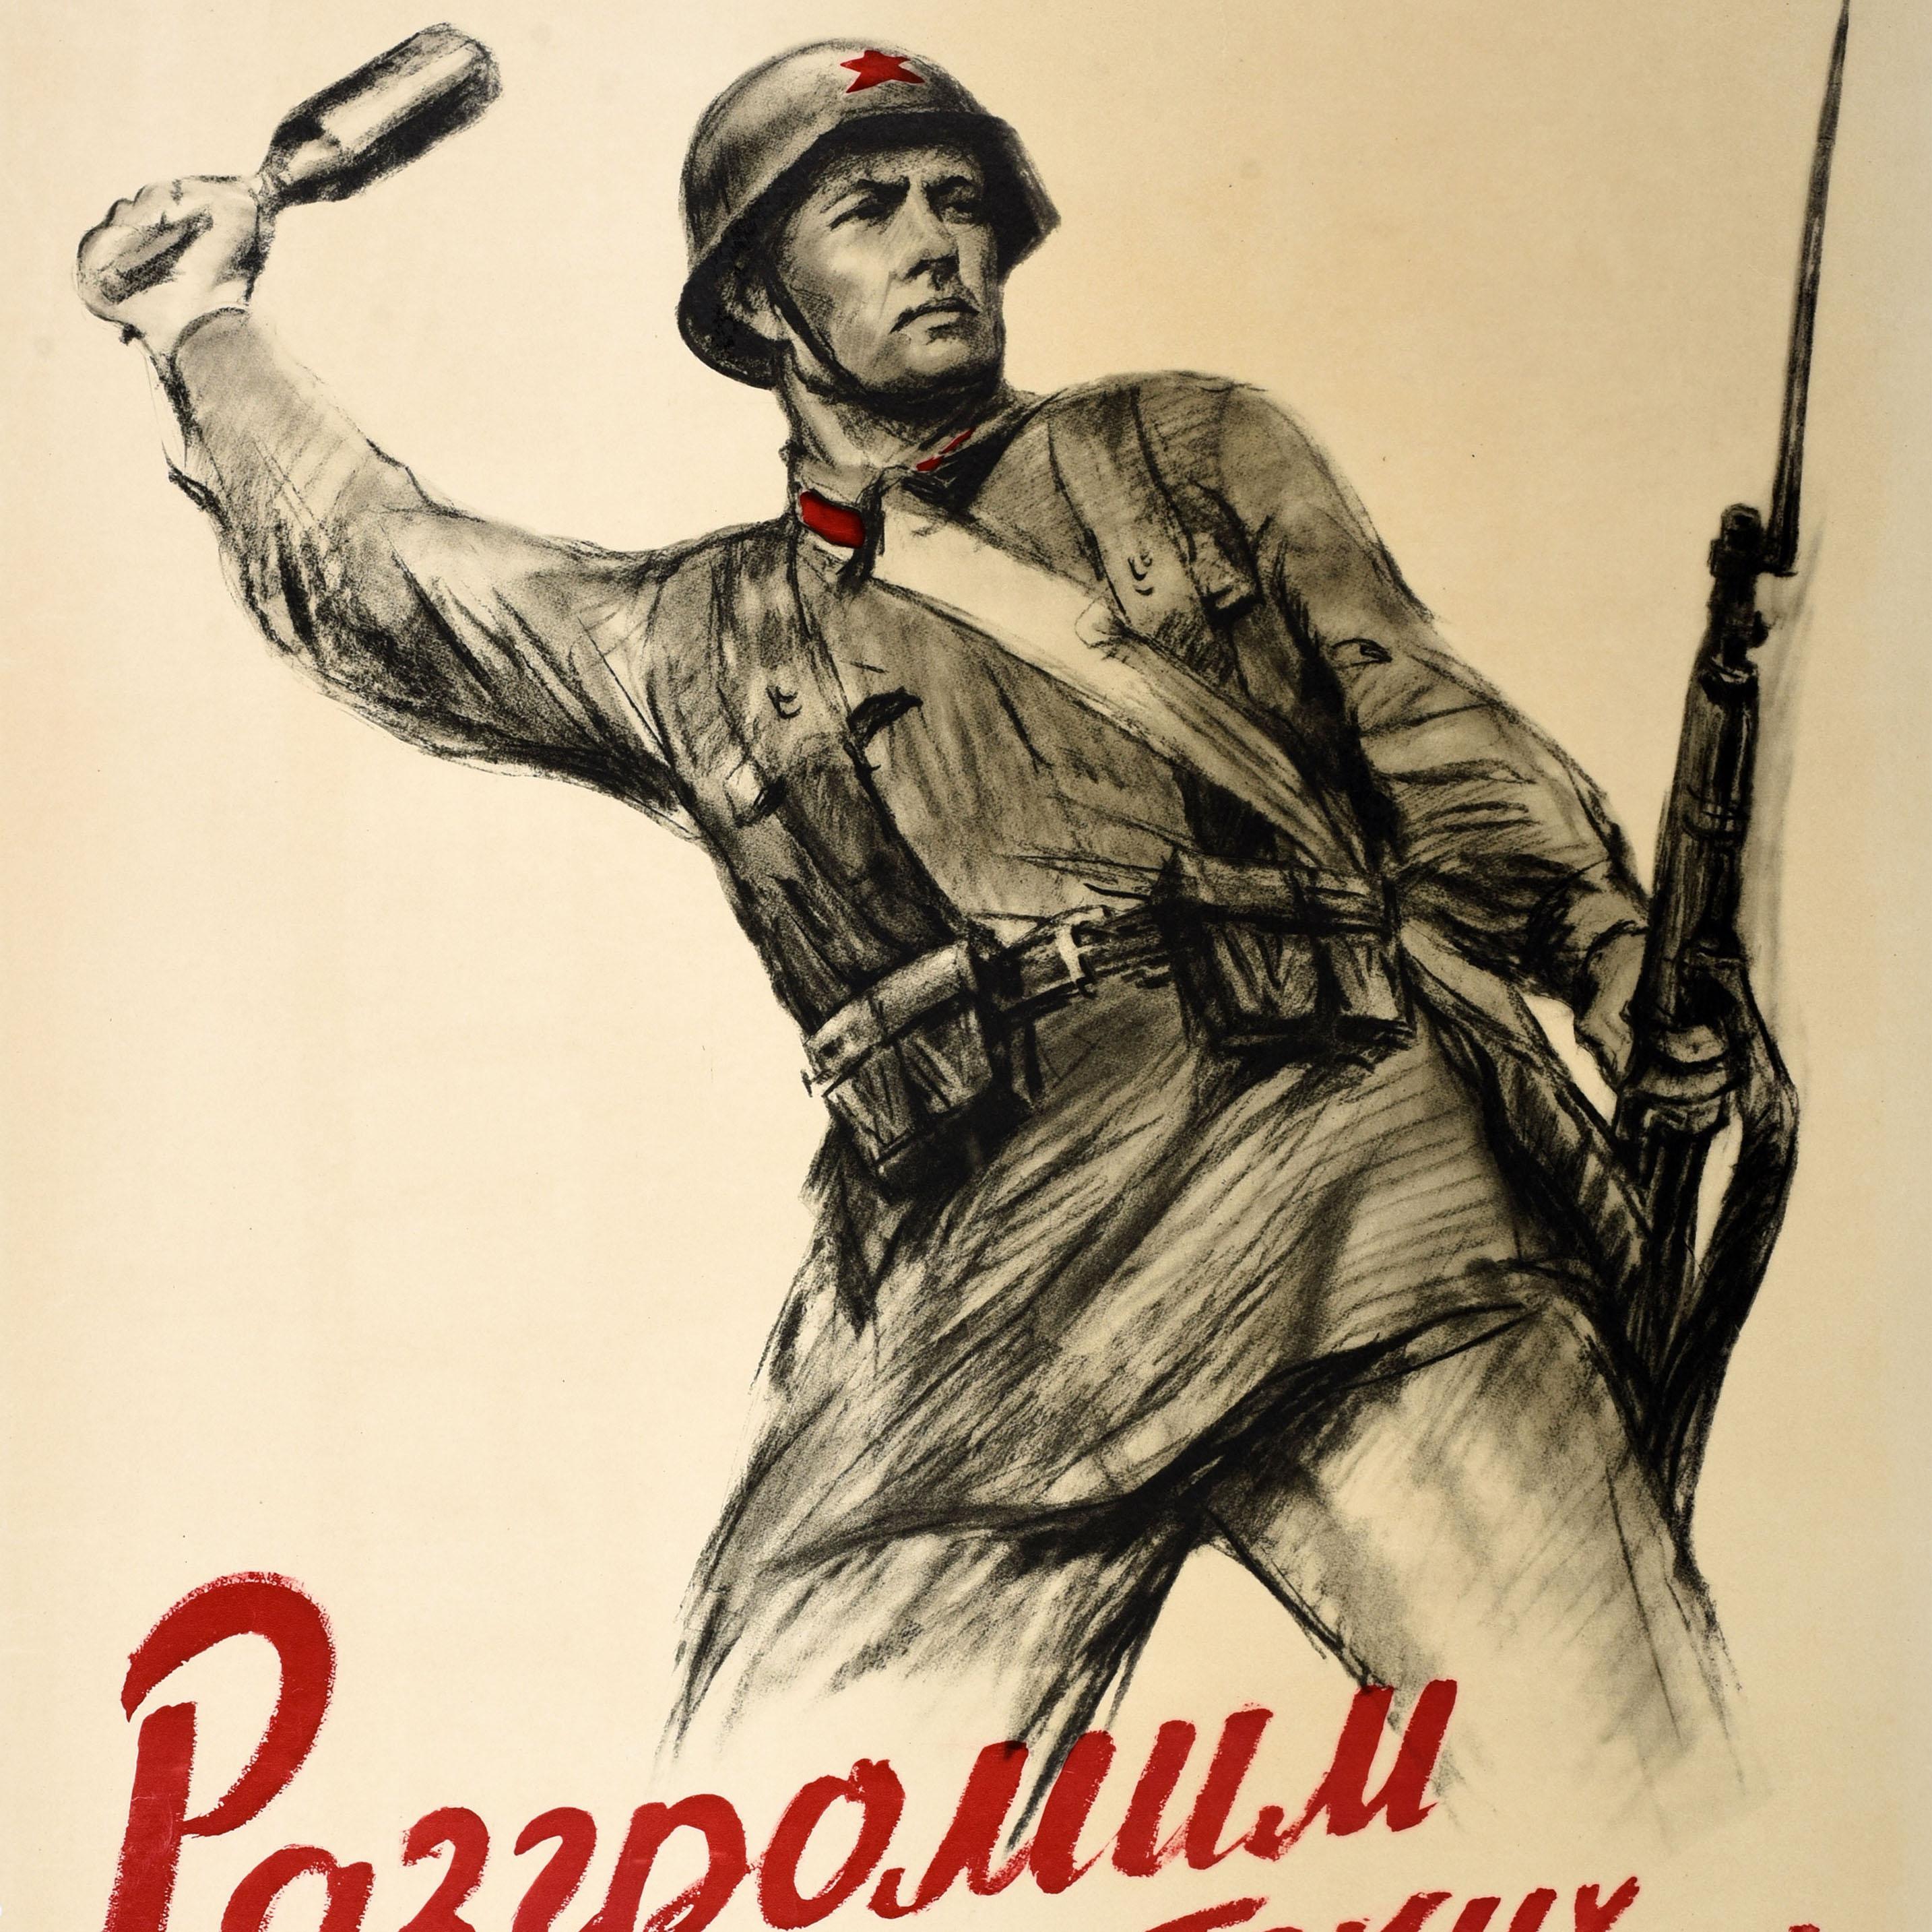 Seltene Original Vintage WWII Propaganda Poster Niederlage faschistische Angreifer UdSSR Armee – Print von Unknown